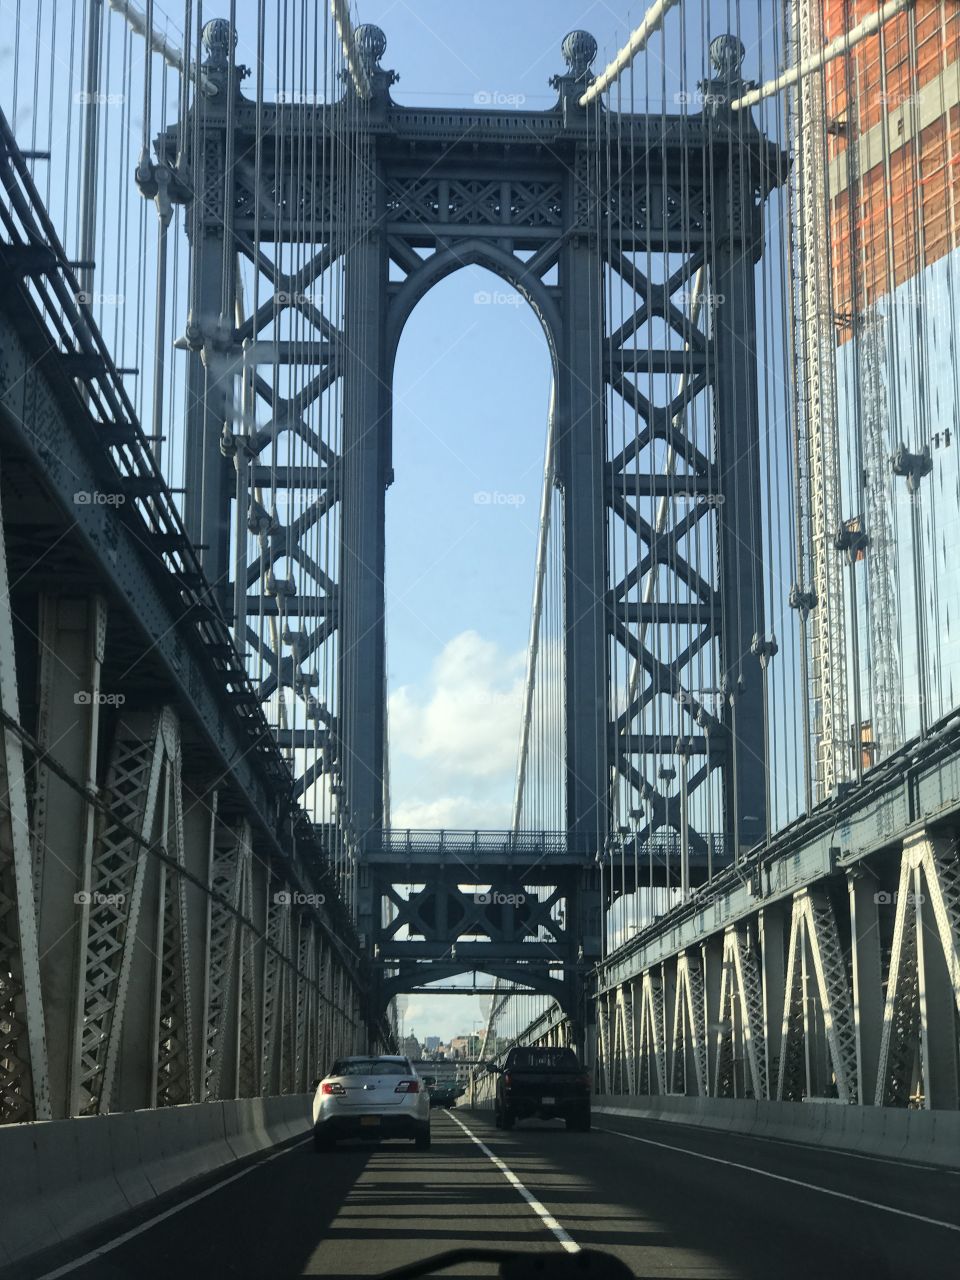 Bridges of NY